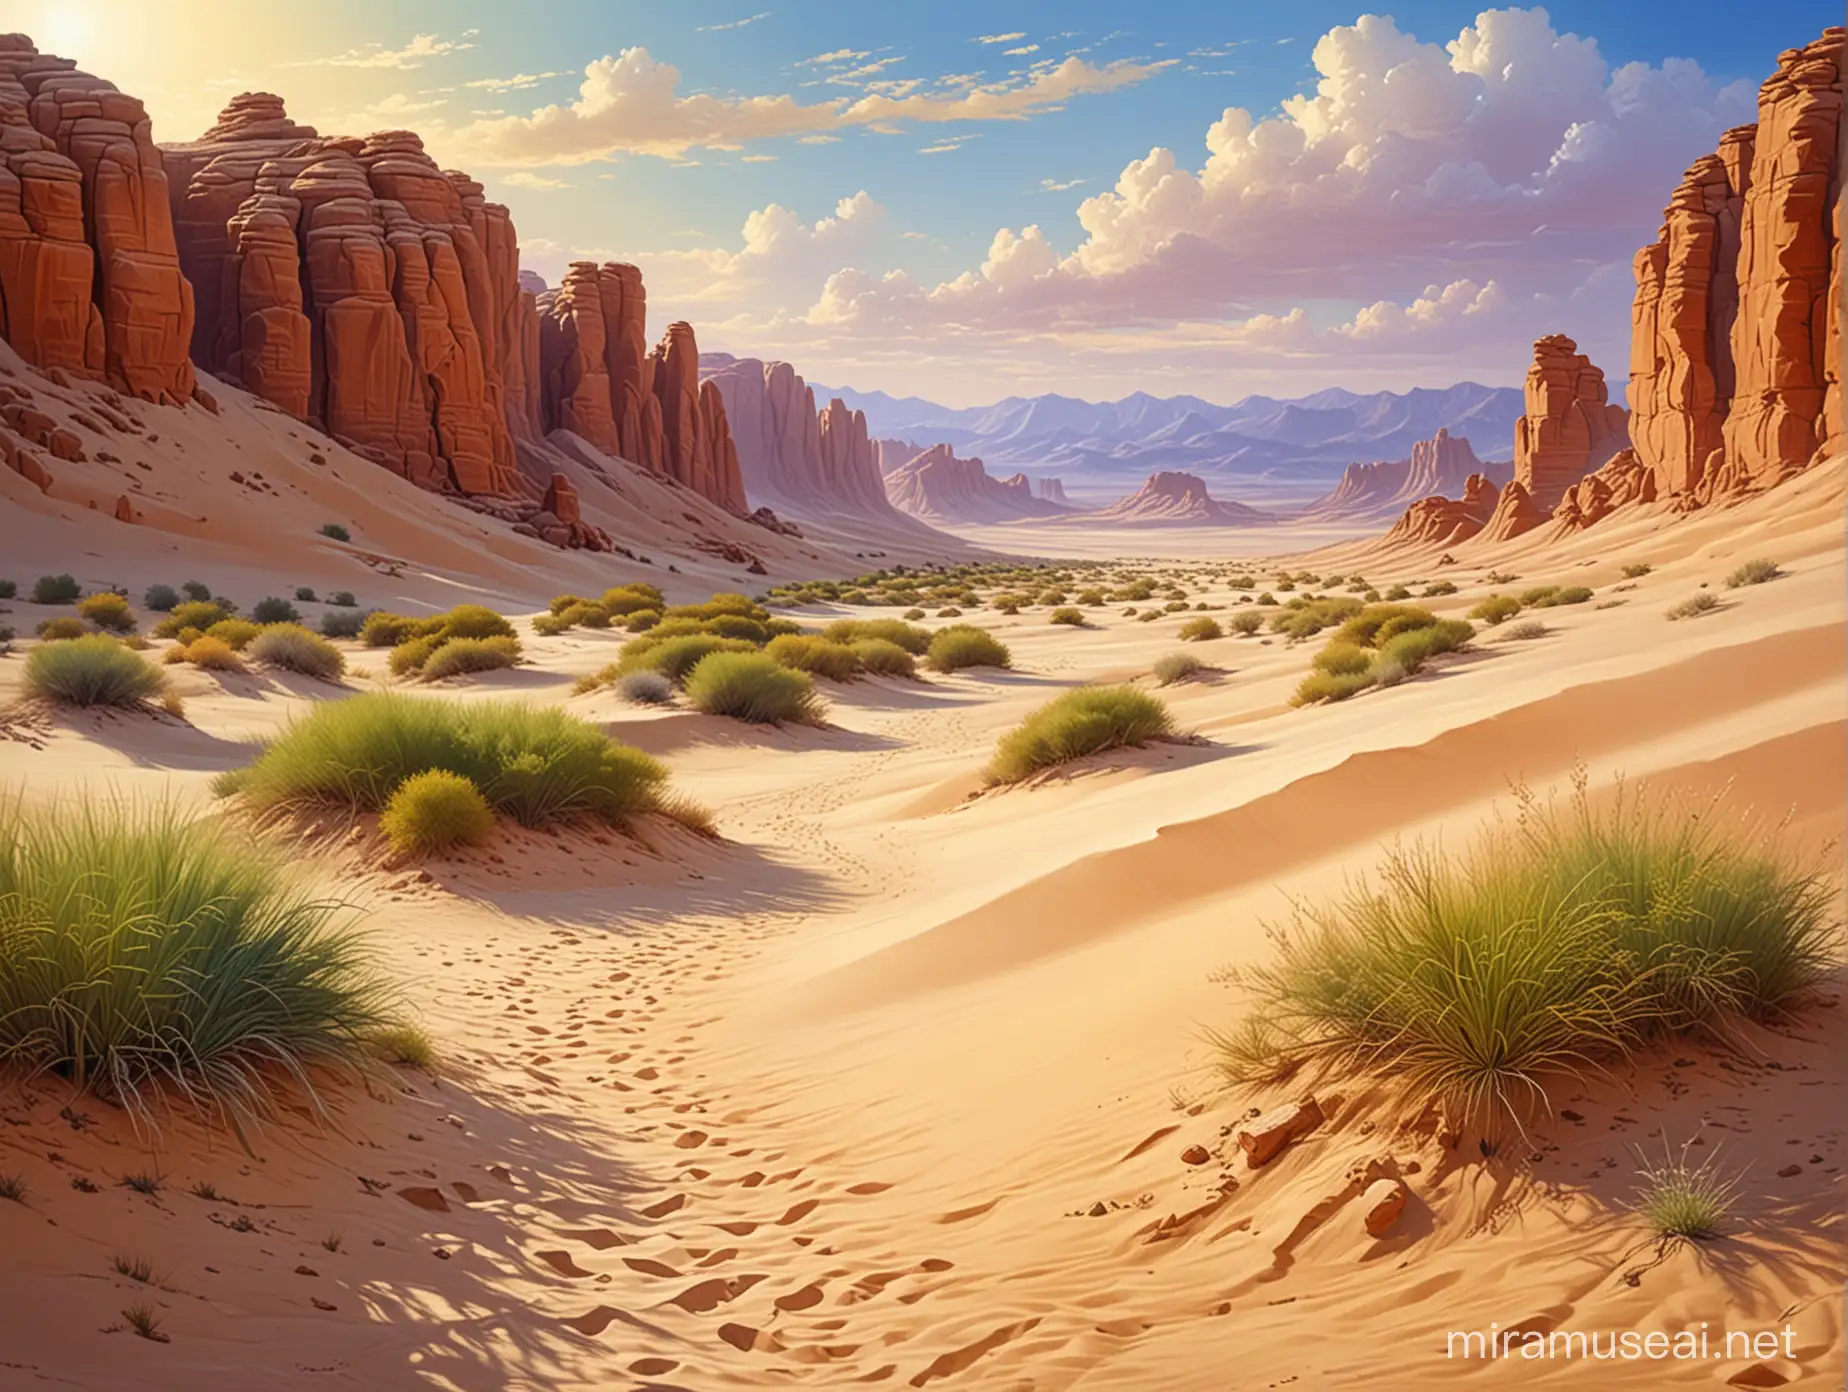 Великолепный пейзаж, пустыня, барханы, сказочный оазис, 
 профессиональный, реалистичный, красочный рисунок, картина маслом, живопись, шедевр.